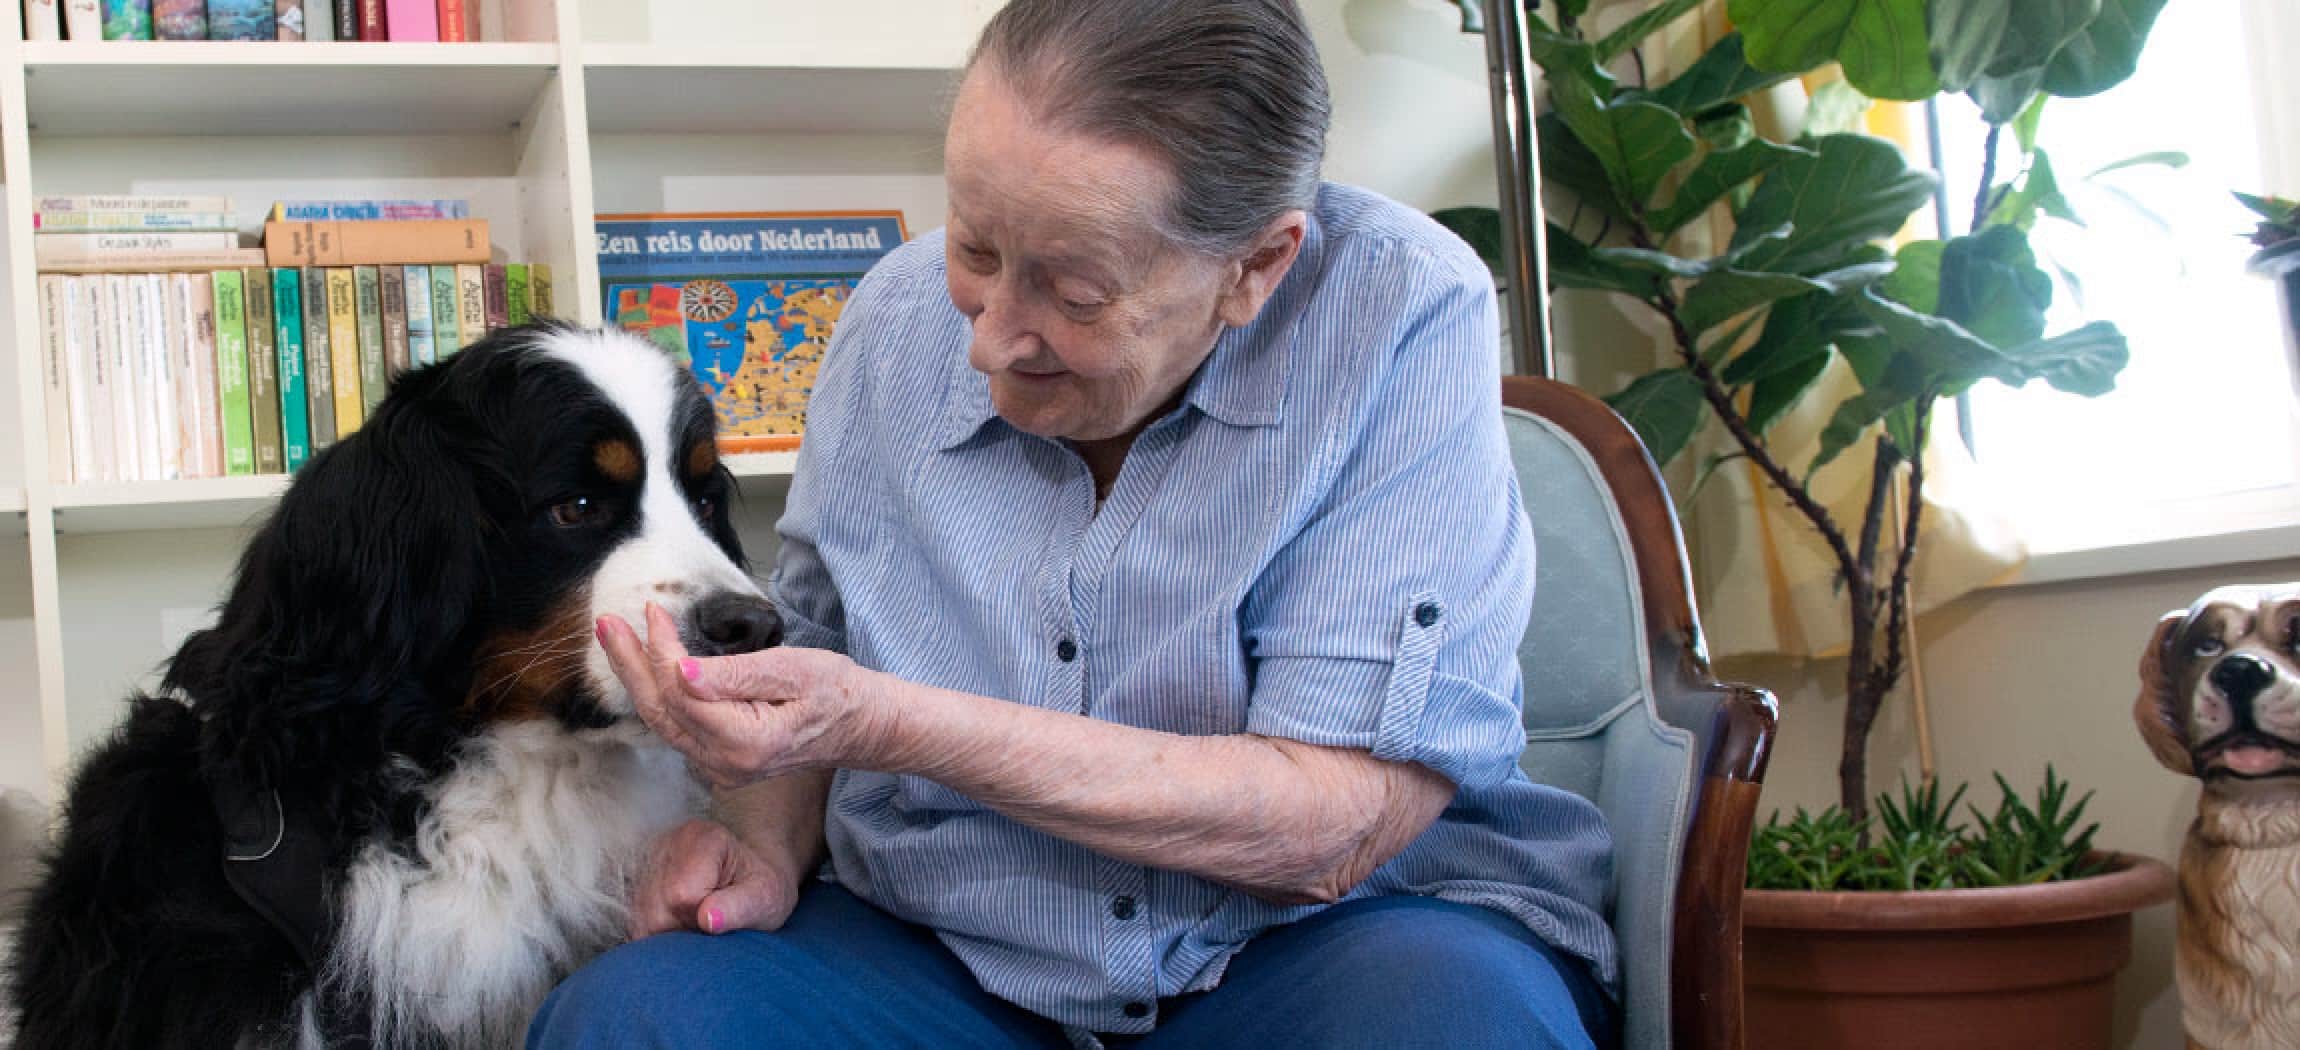 Berner Sennenhond (Pleun) als therapiehond op bezoek bij ouderen